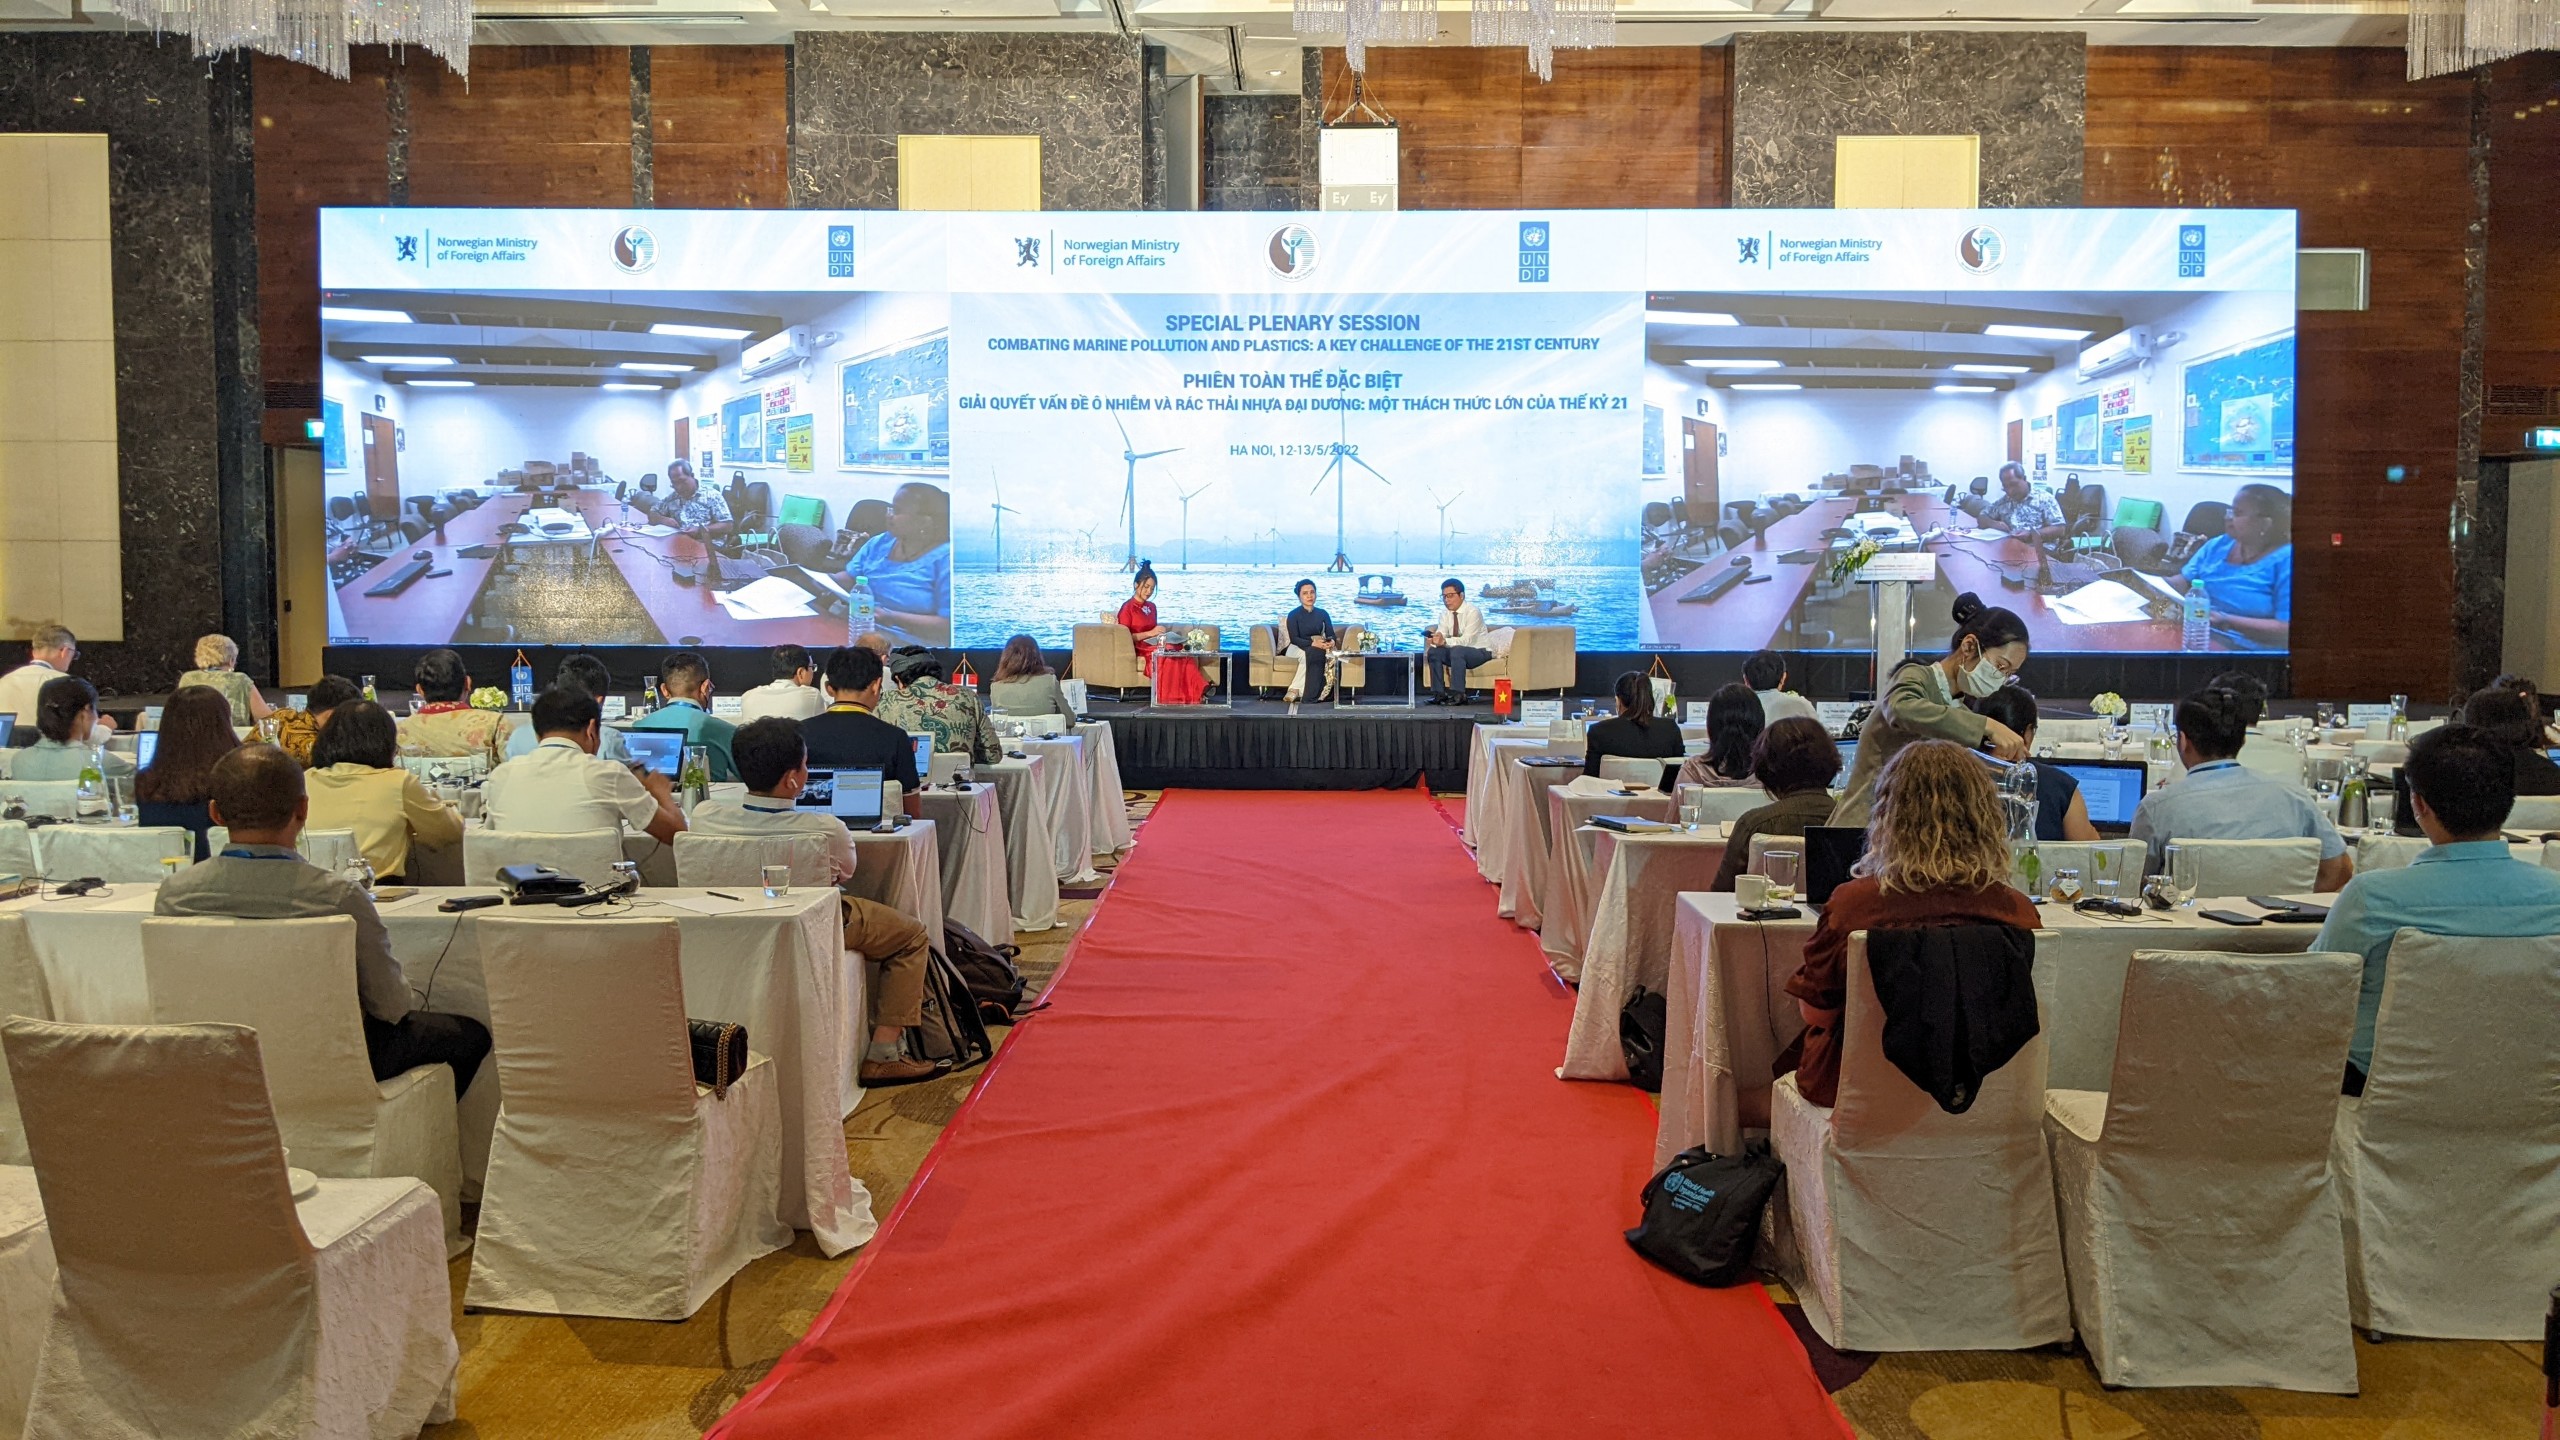 Hội nghị quốc tế về phát triển kinh tế đại dương bền vững được tổ chức tại Hà Nội